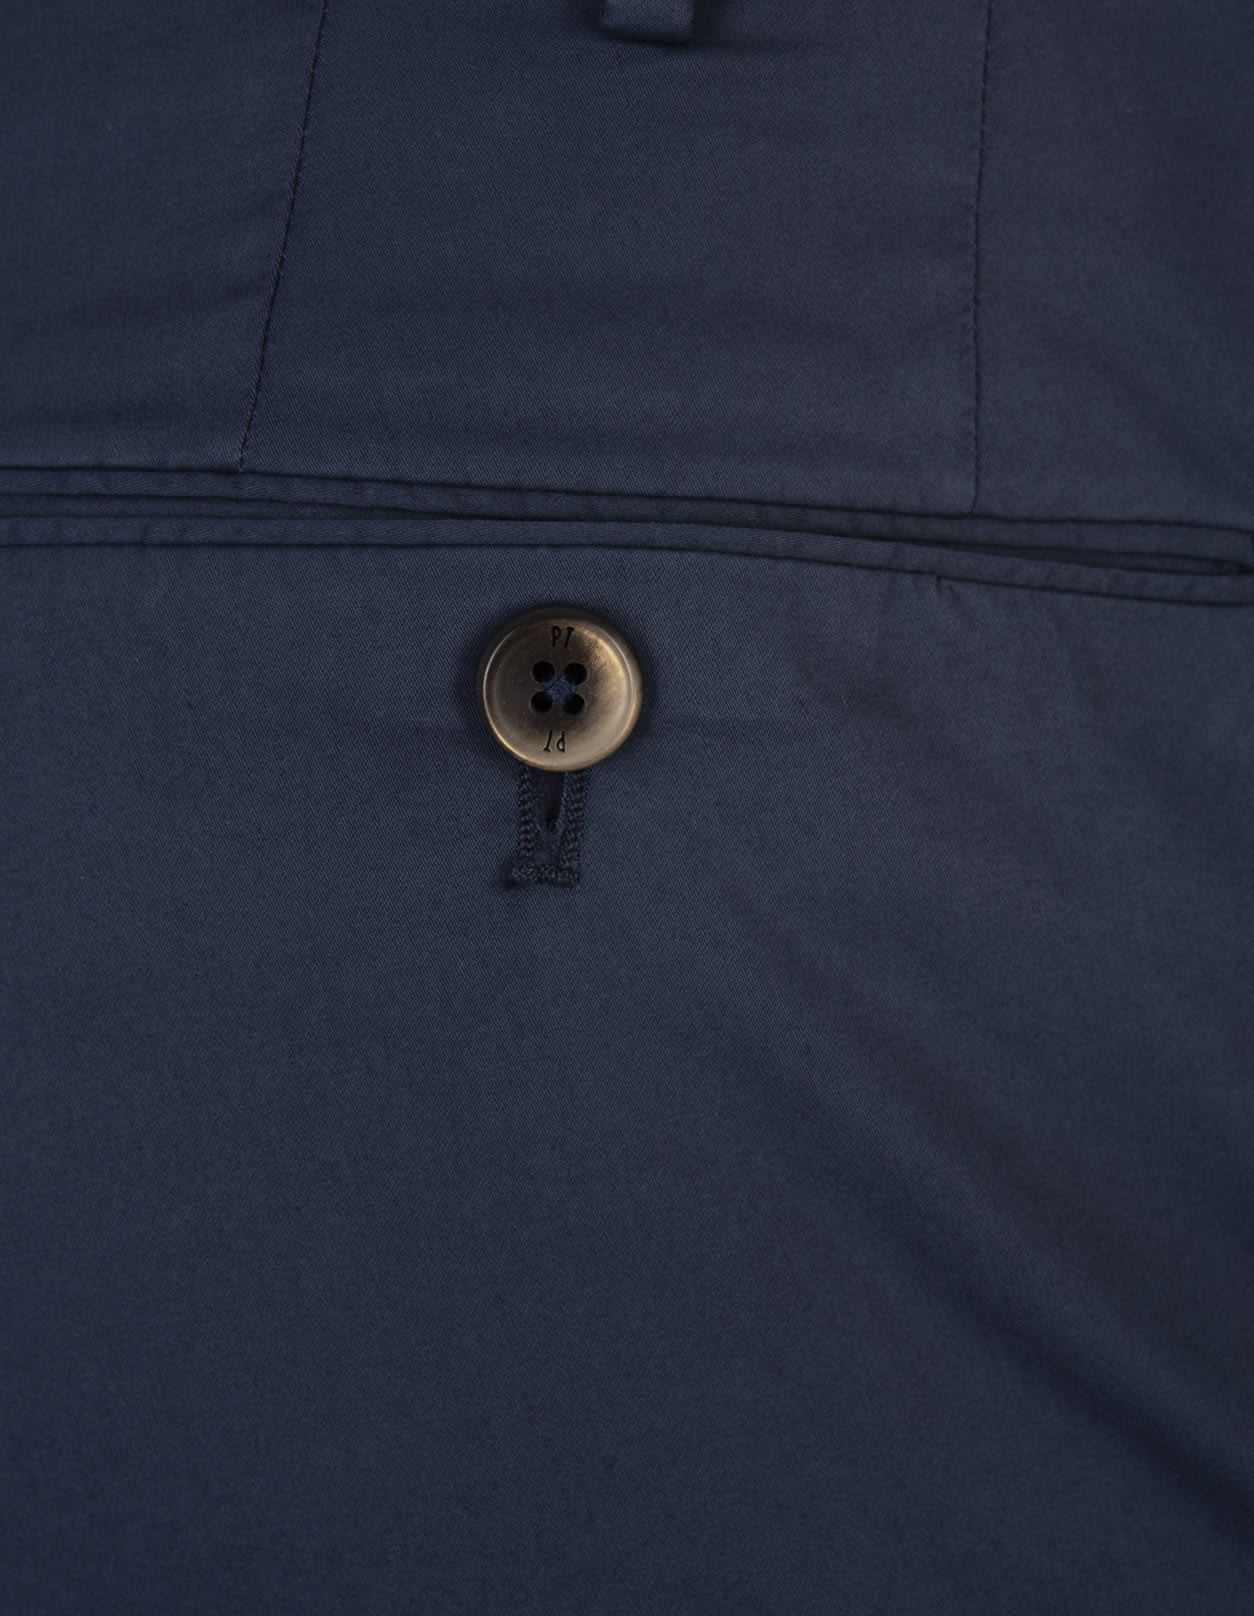 Shop Pt01 Blue Stretch Cotton Classic Trousers